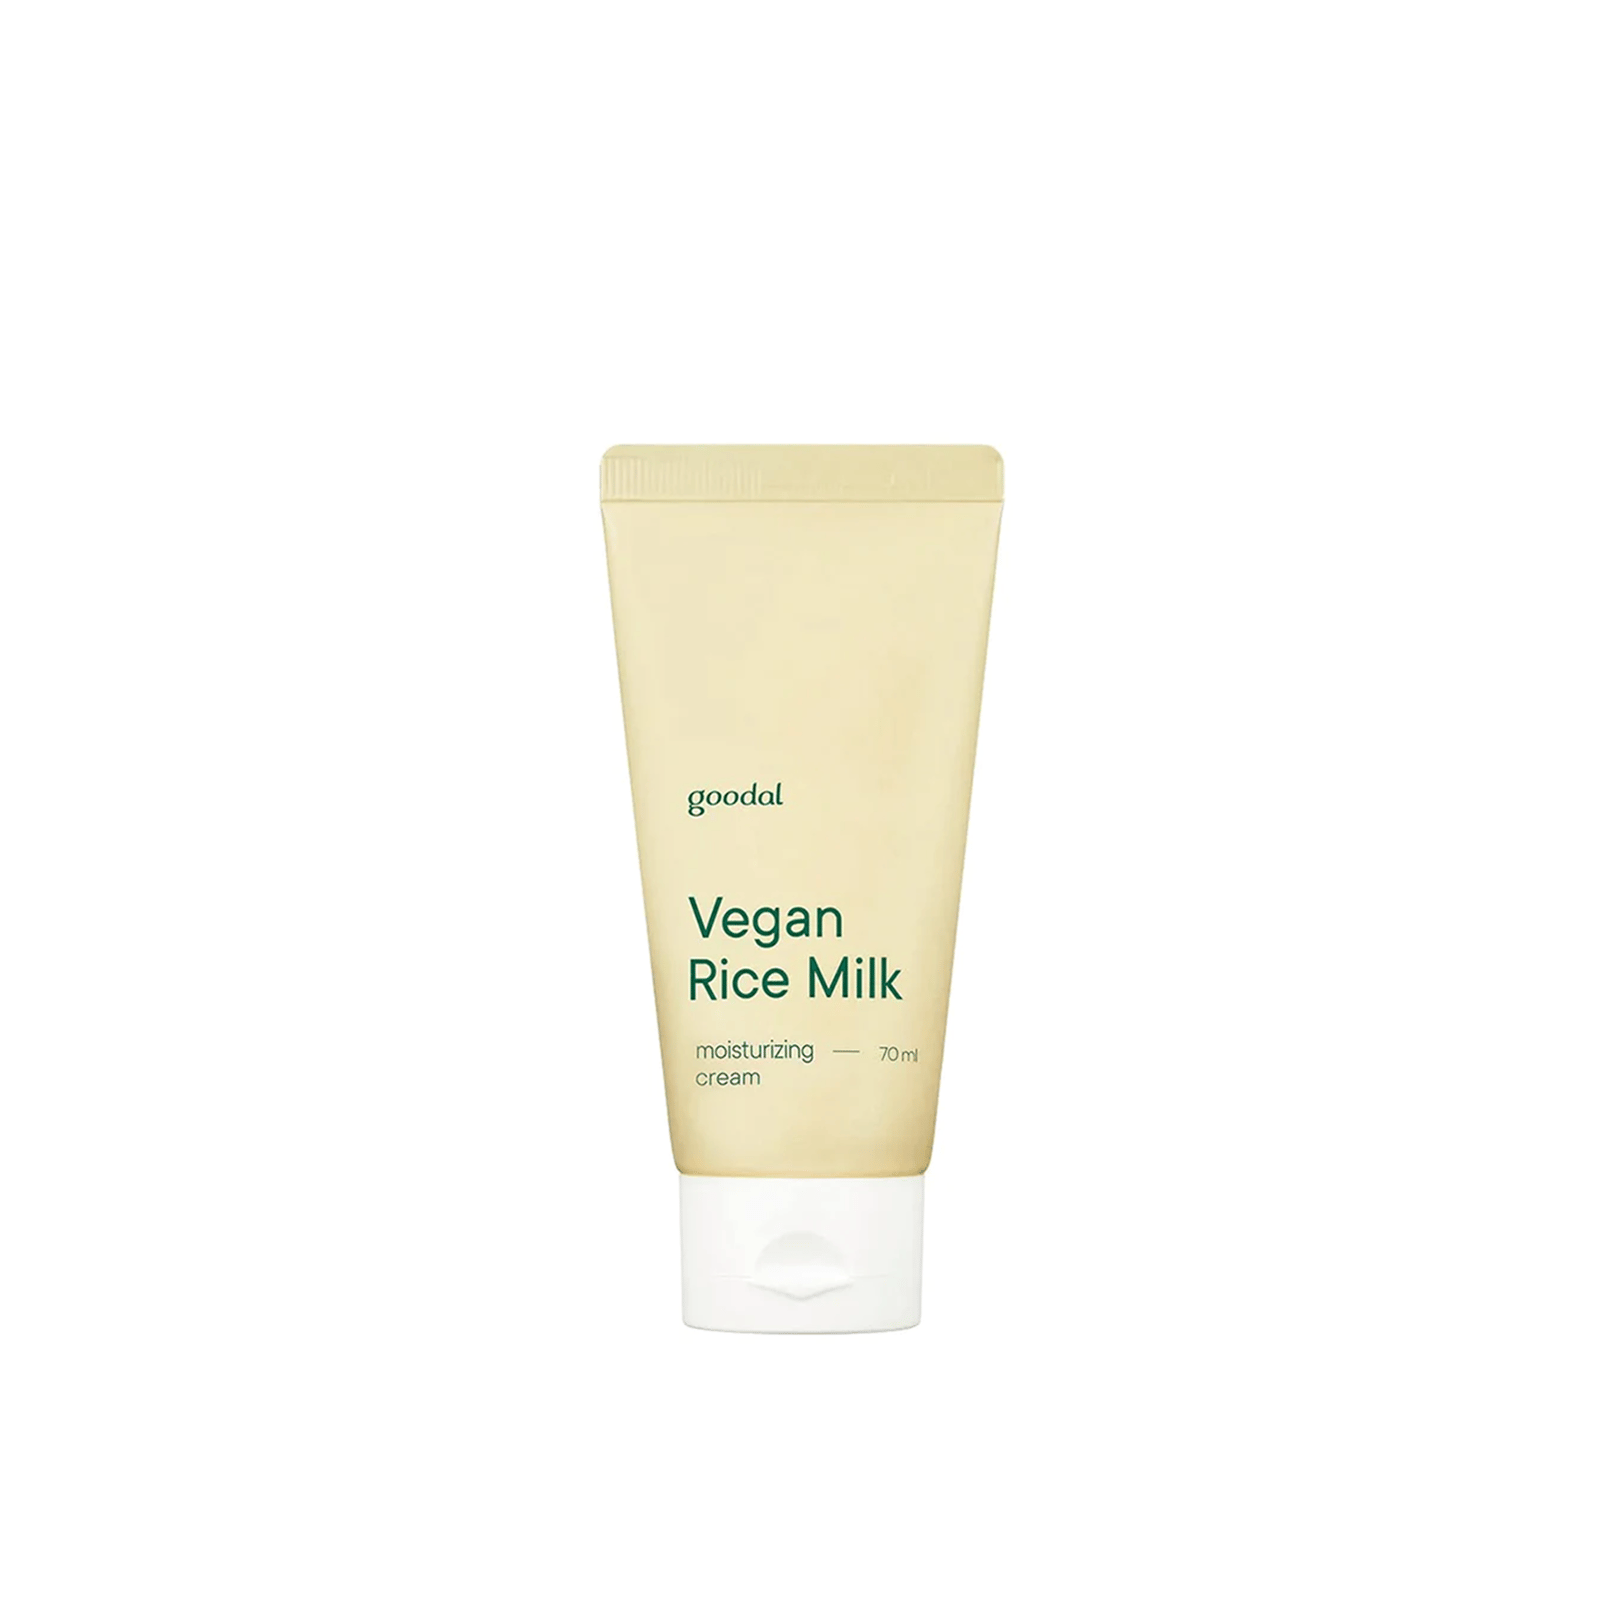 Goodal Vegan Rice Milk Moisturizing Cream 70ml (2.36floz)